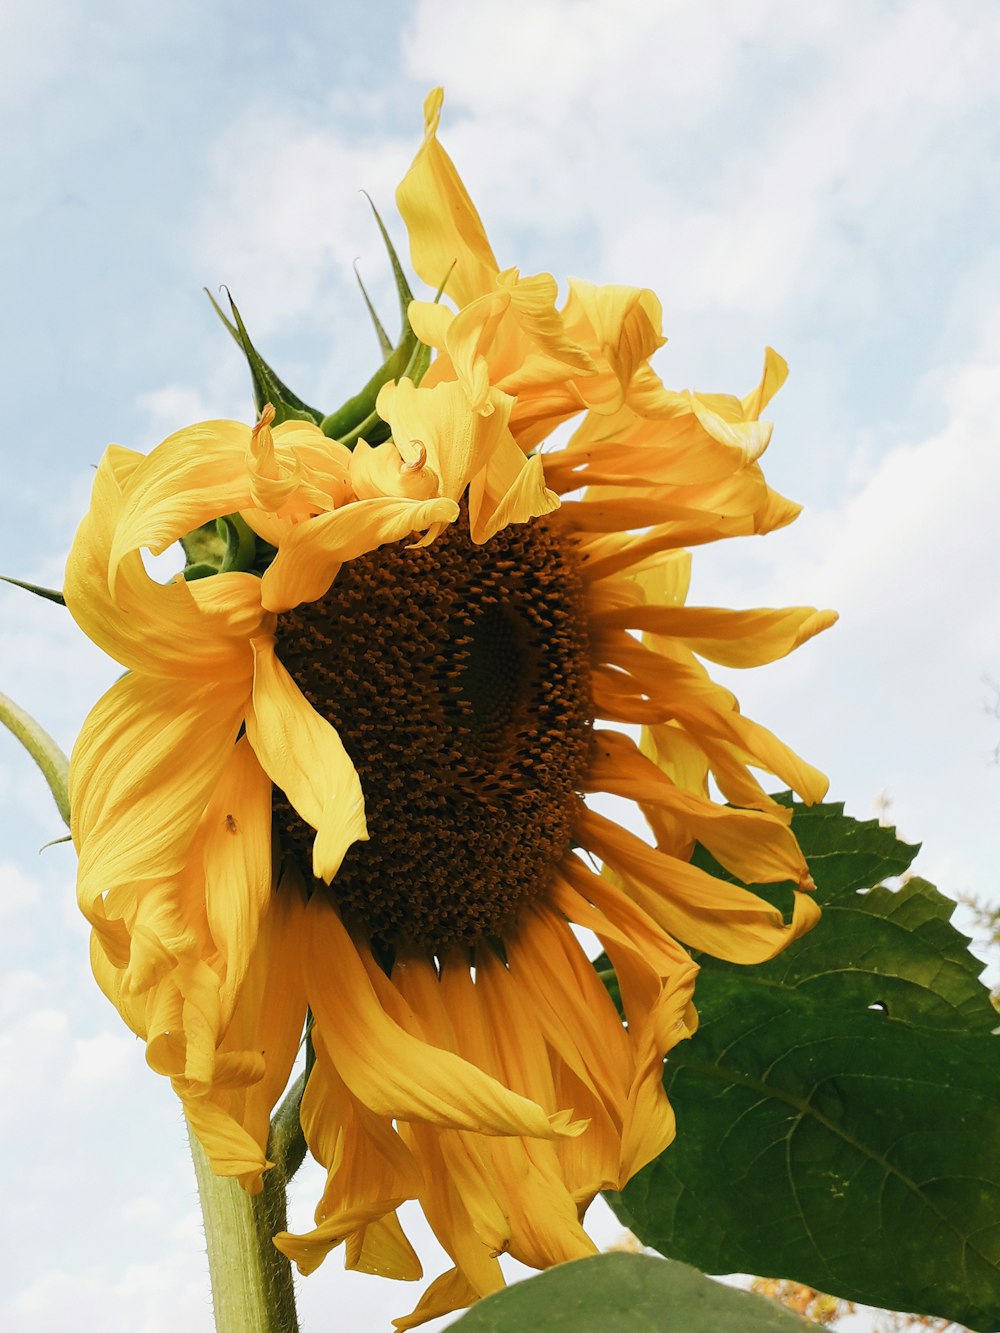 blooming yellow sunflower